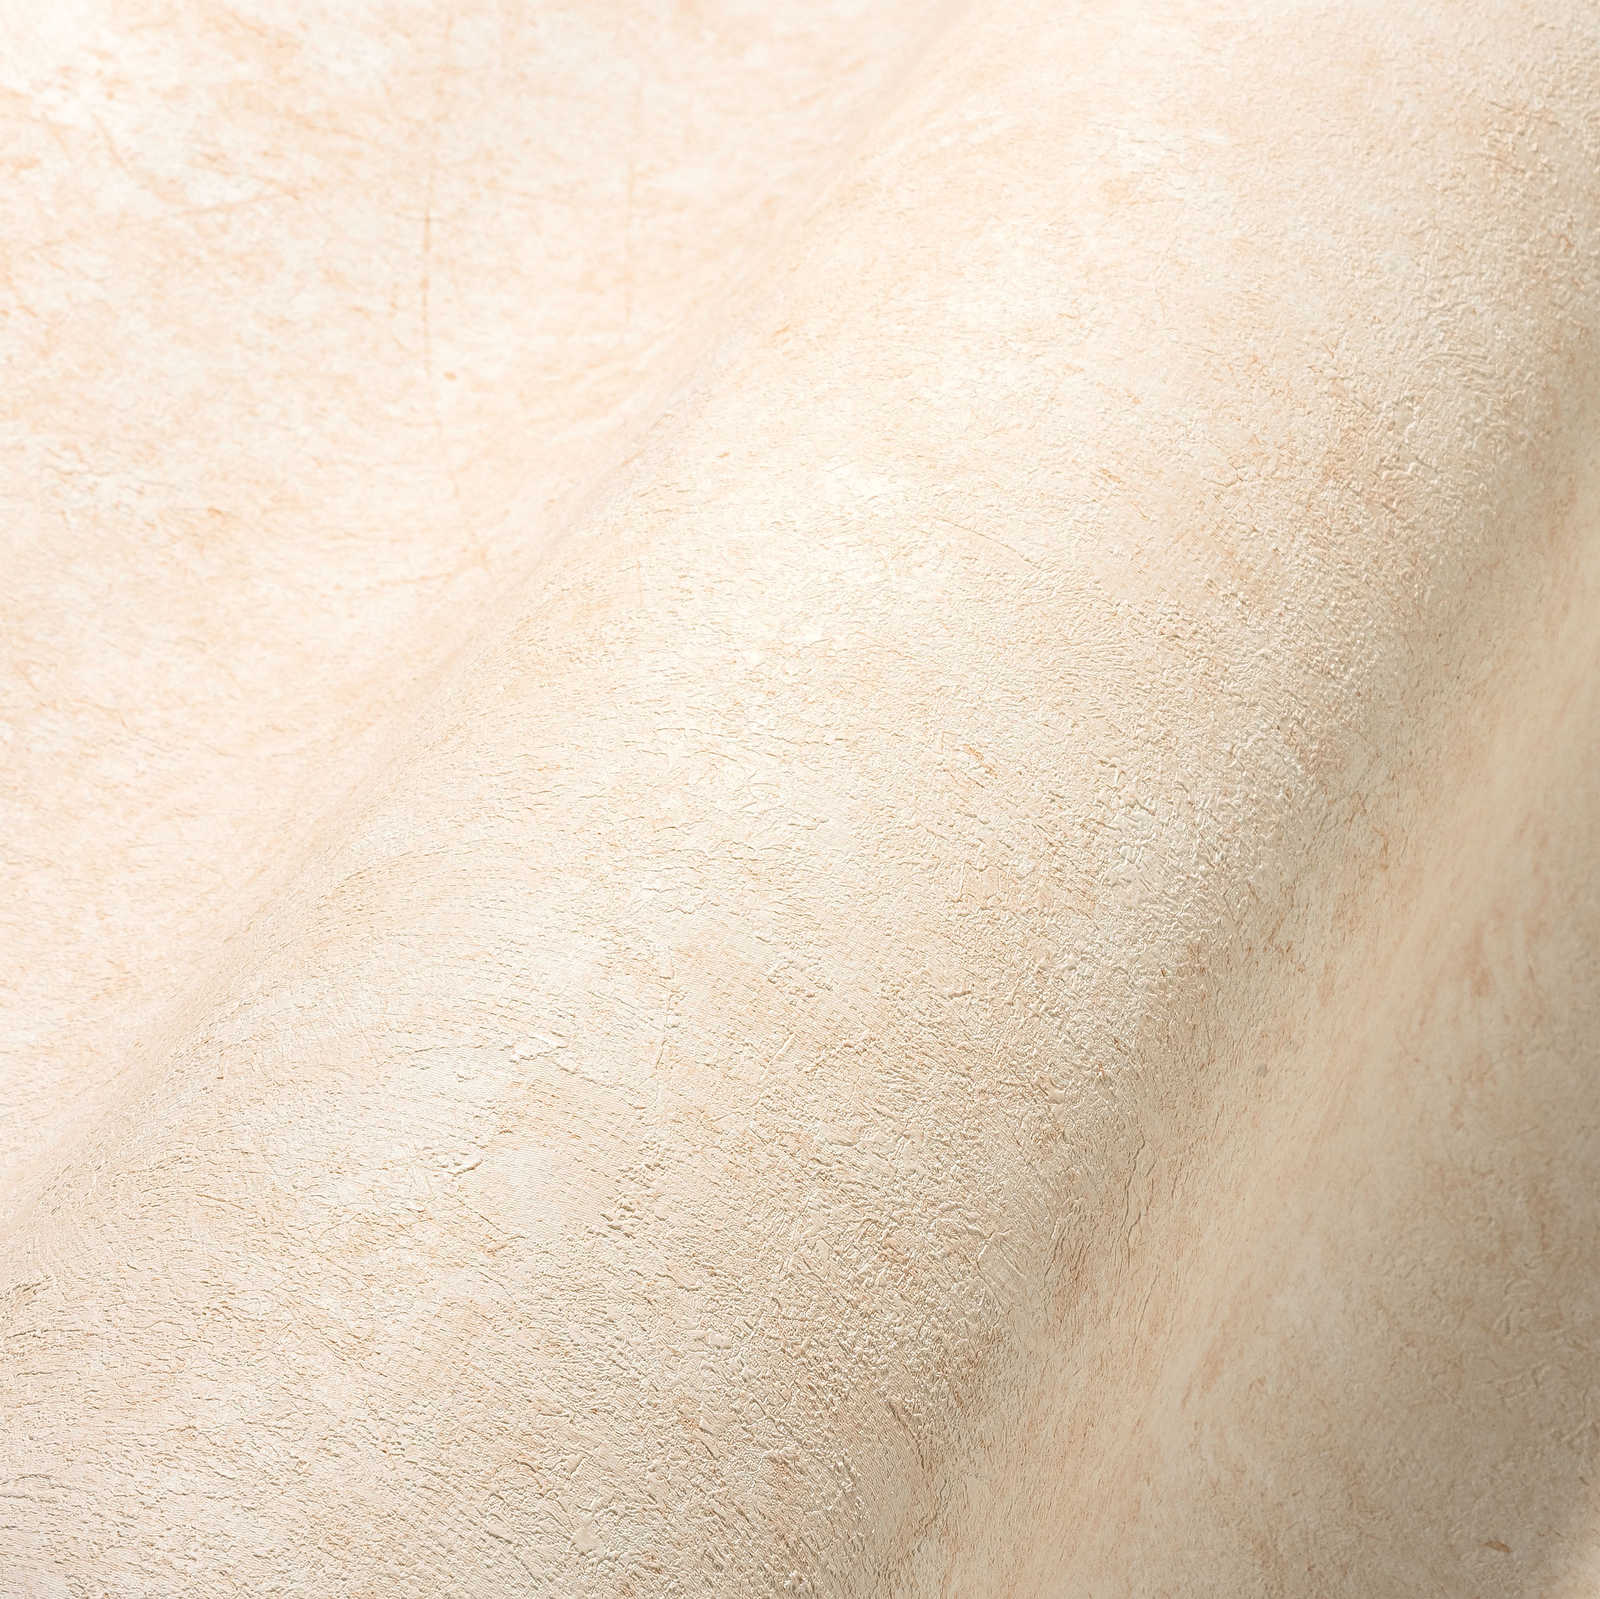             Strukturenbehang in effen subtiele tinten - crème, beige
        